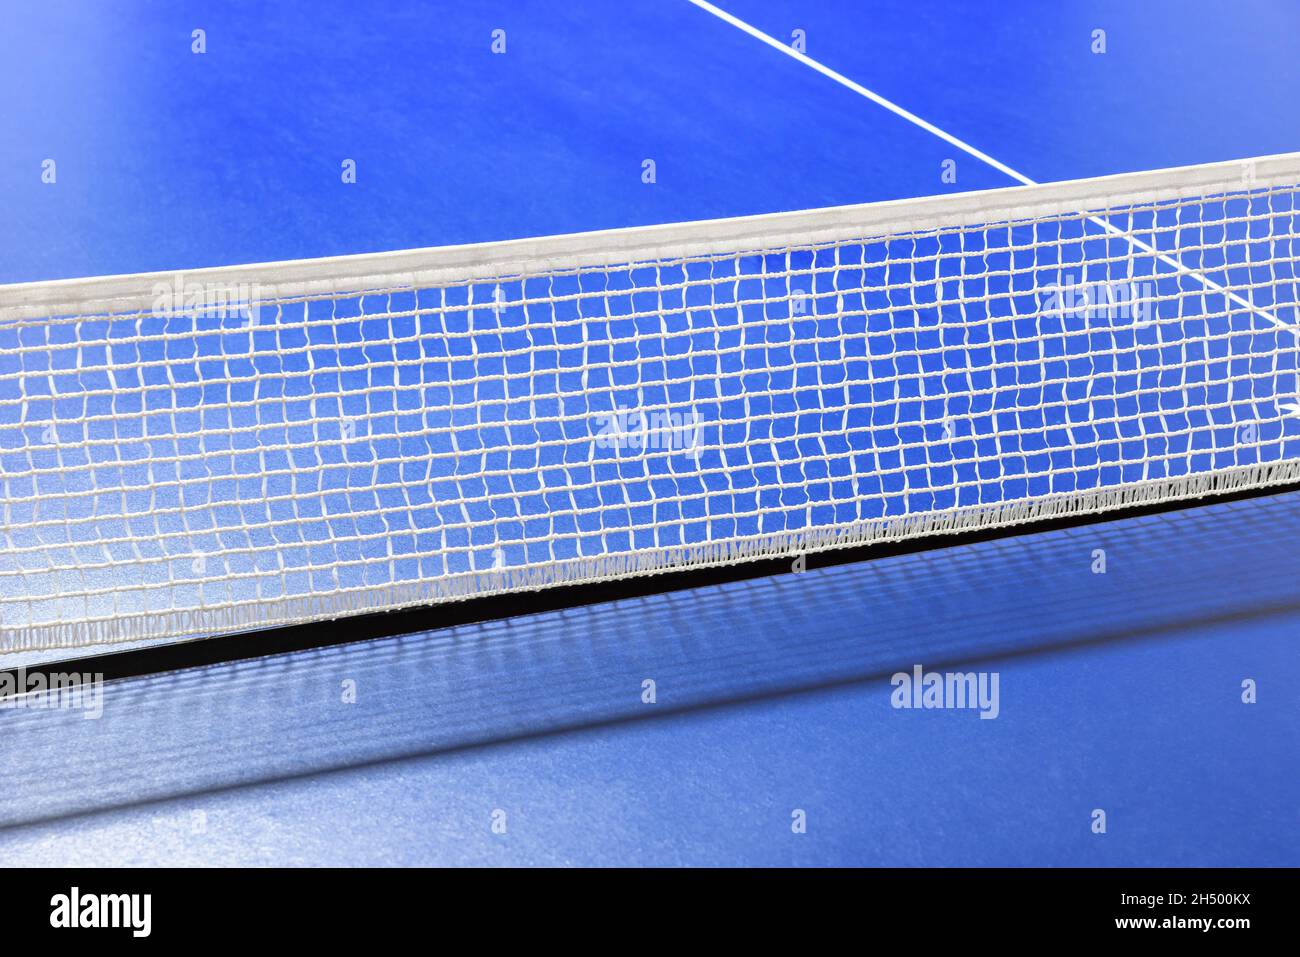 Cierre de la red de tenis de mesa azul como fondo deportivo Foto de stock